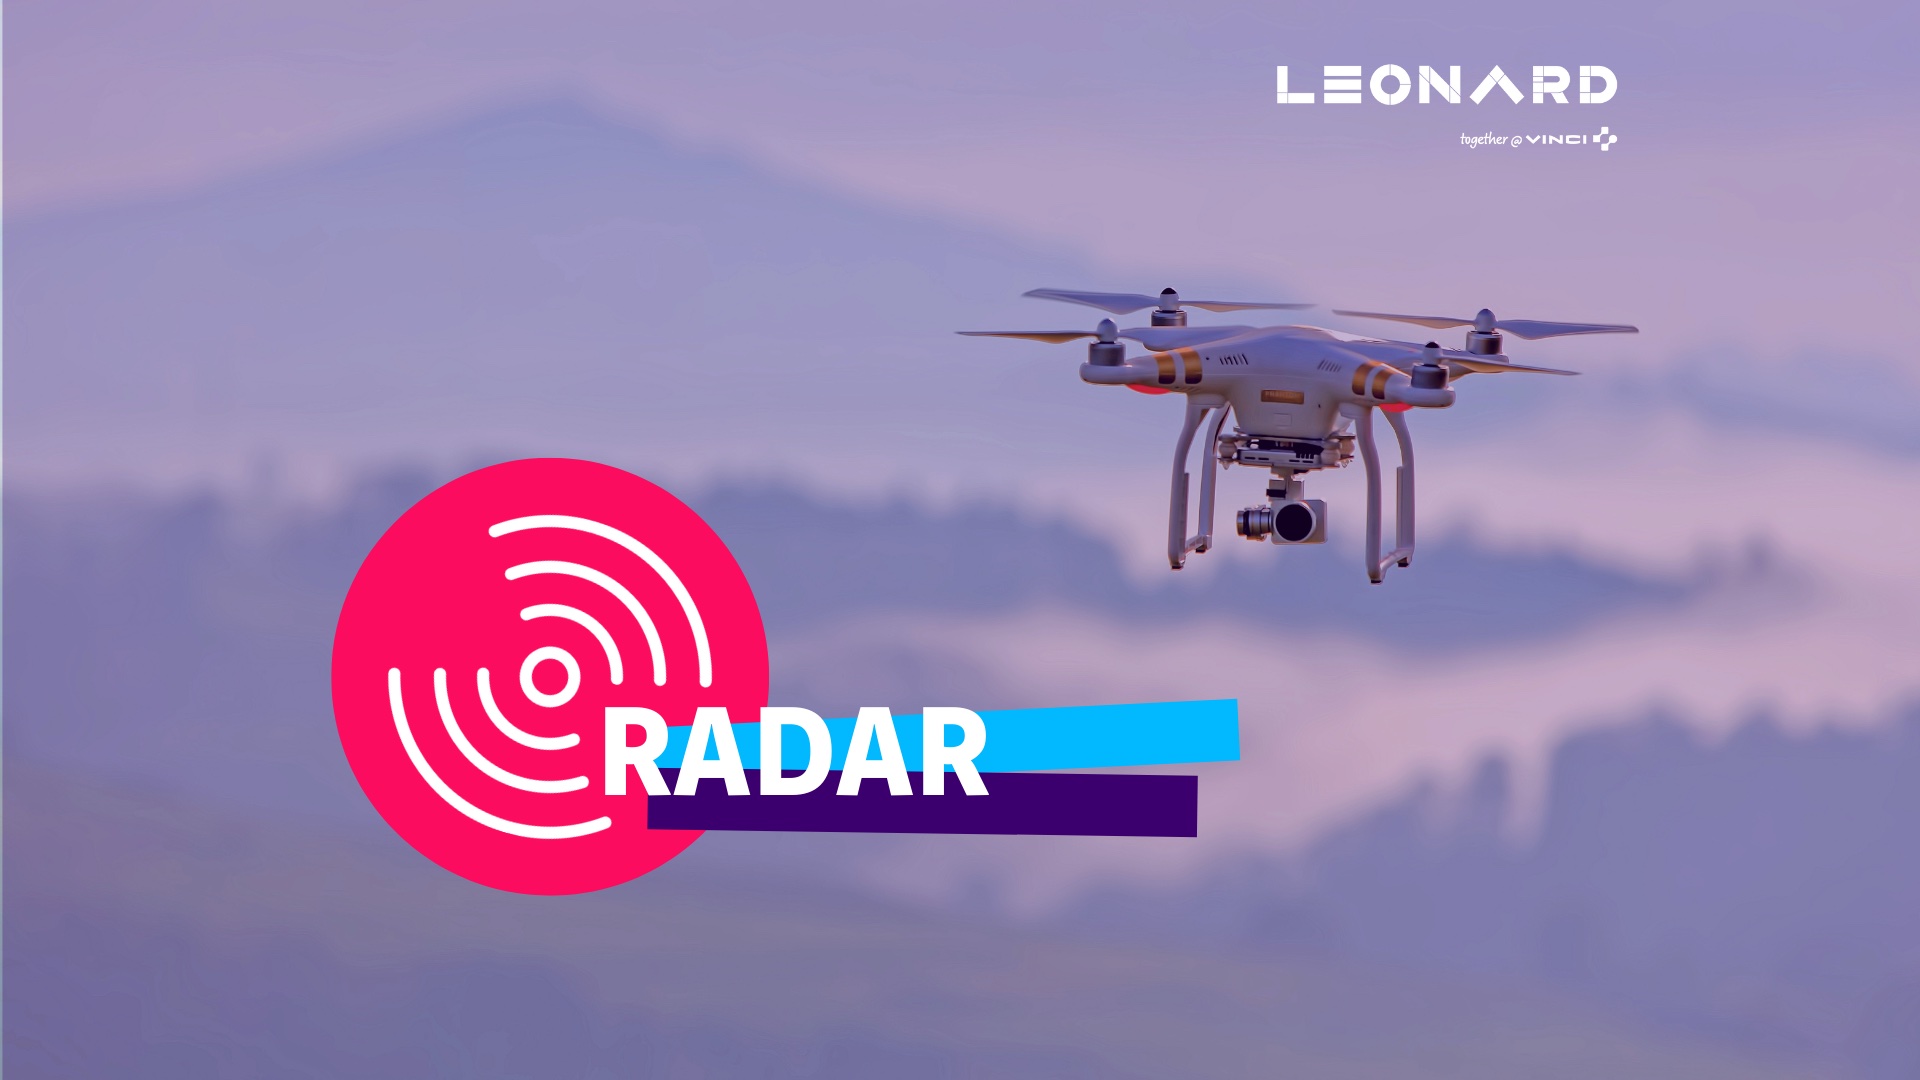 Radar – Notre sélection de business innovants #57